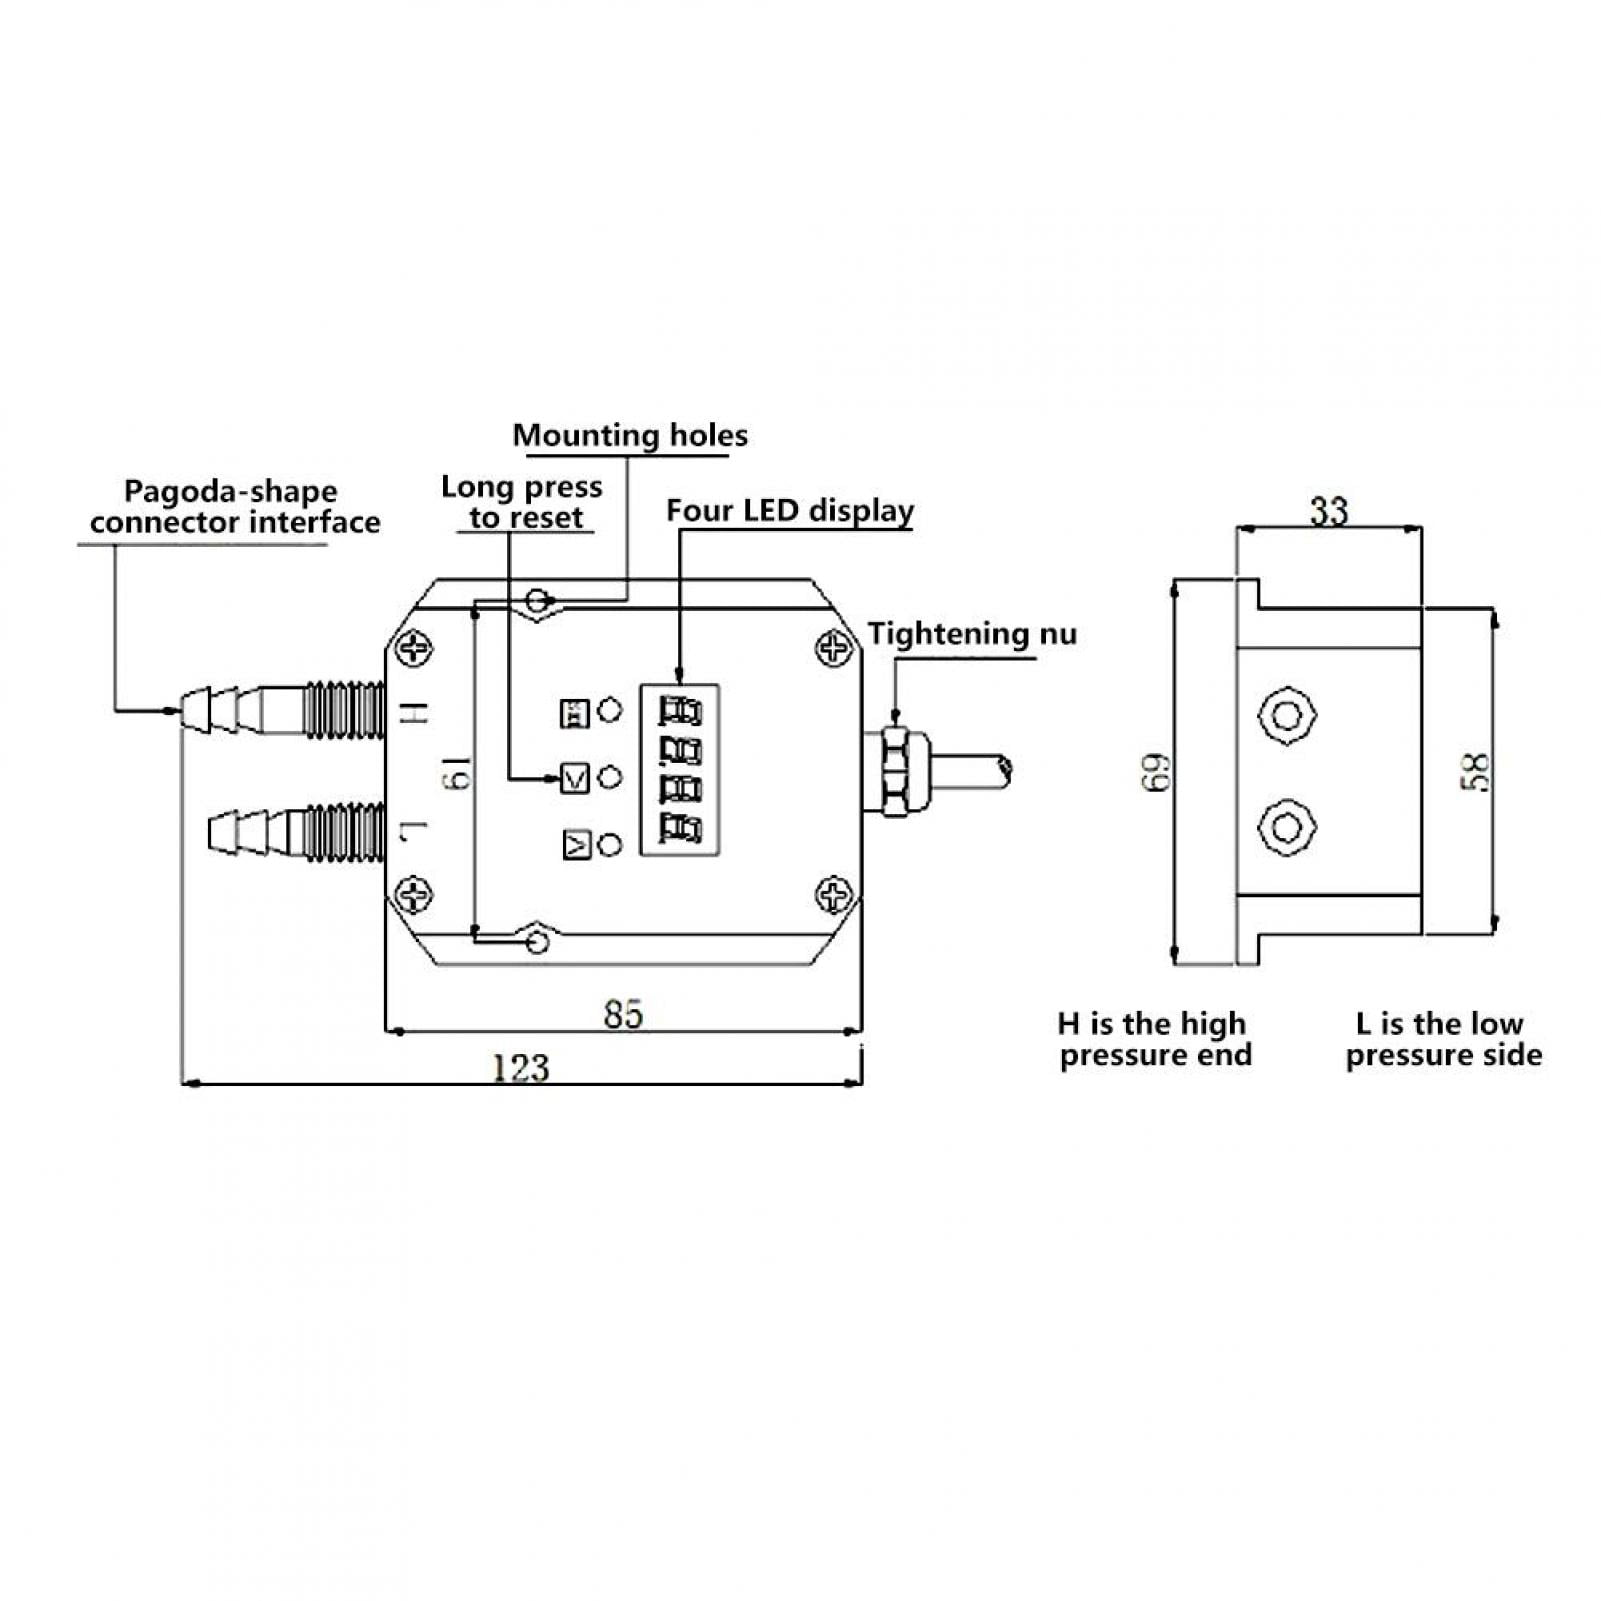 LCD Intelligent Digital Pressure Transmitter Tester DC 24V 4-20mA for Measure Gauge & Differential Pressure 0-1kPa ALS-330 Digital Manometer 